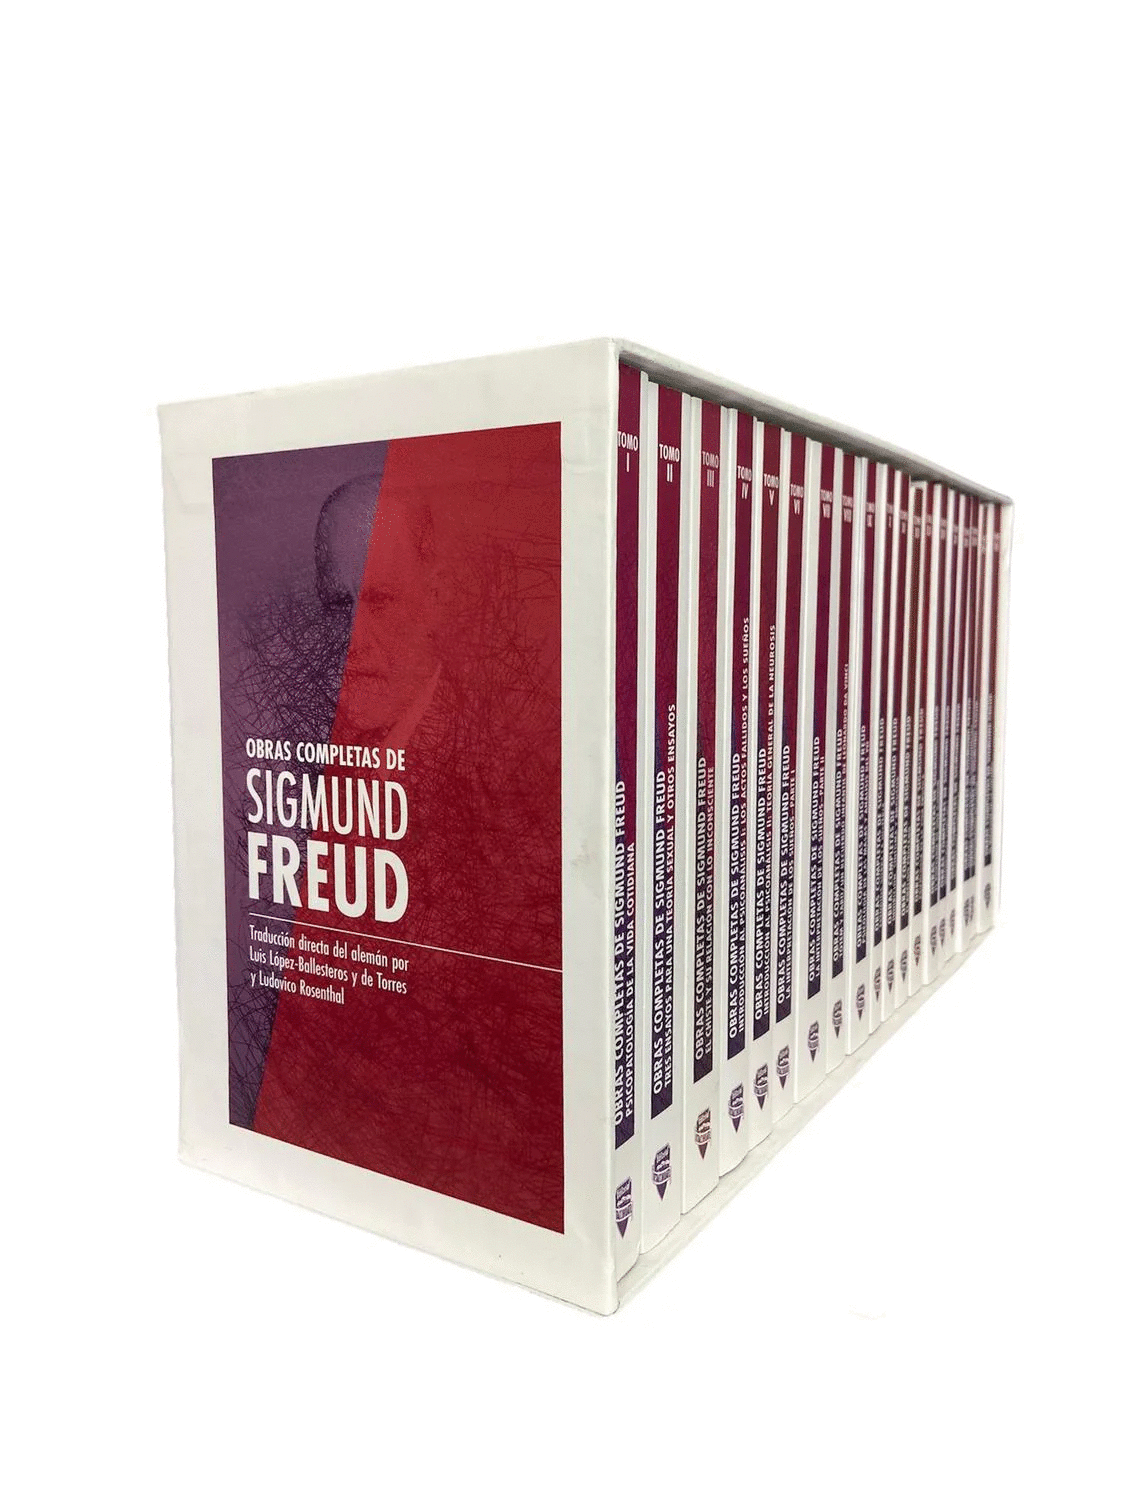 [NEISA8548] Obras Completas De Sigmund Freud. Estuche Con 19 Tomos